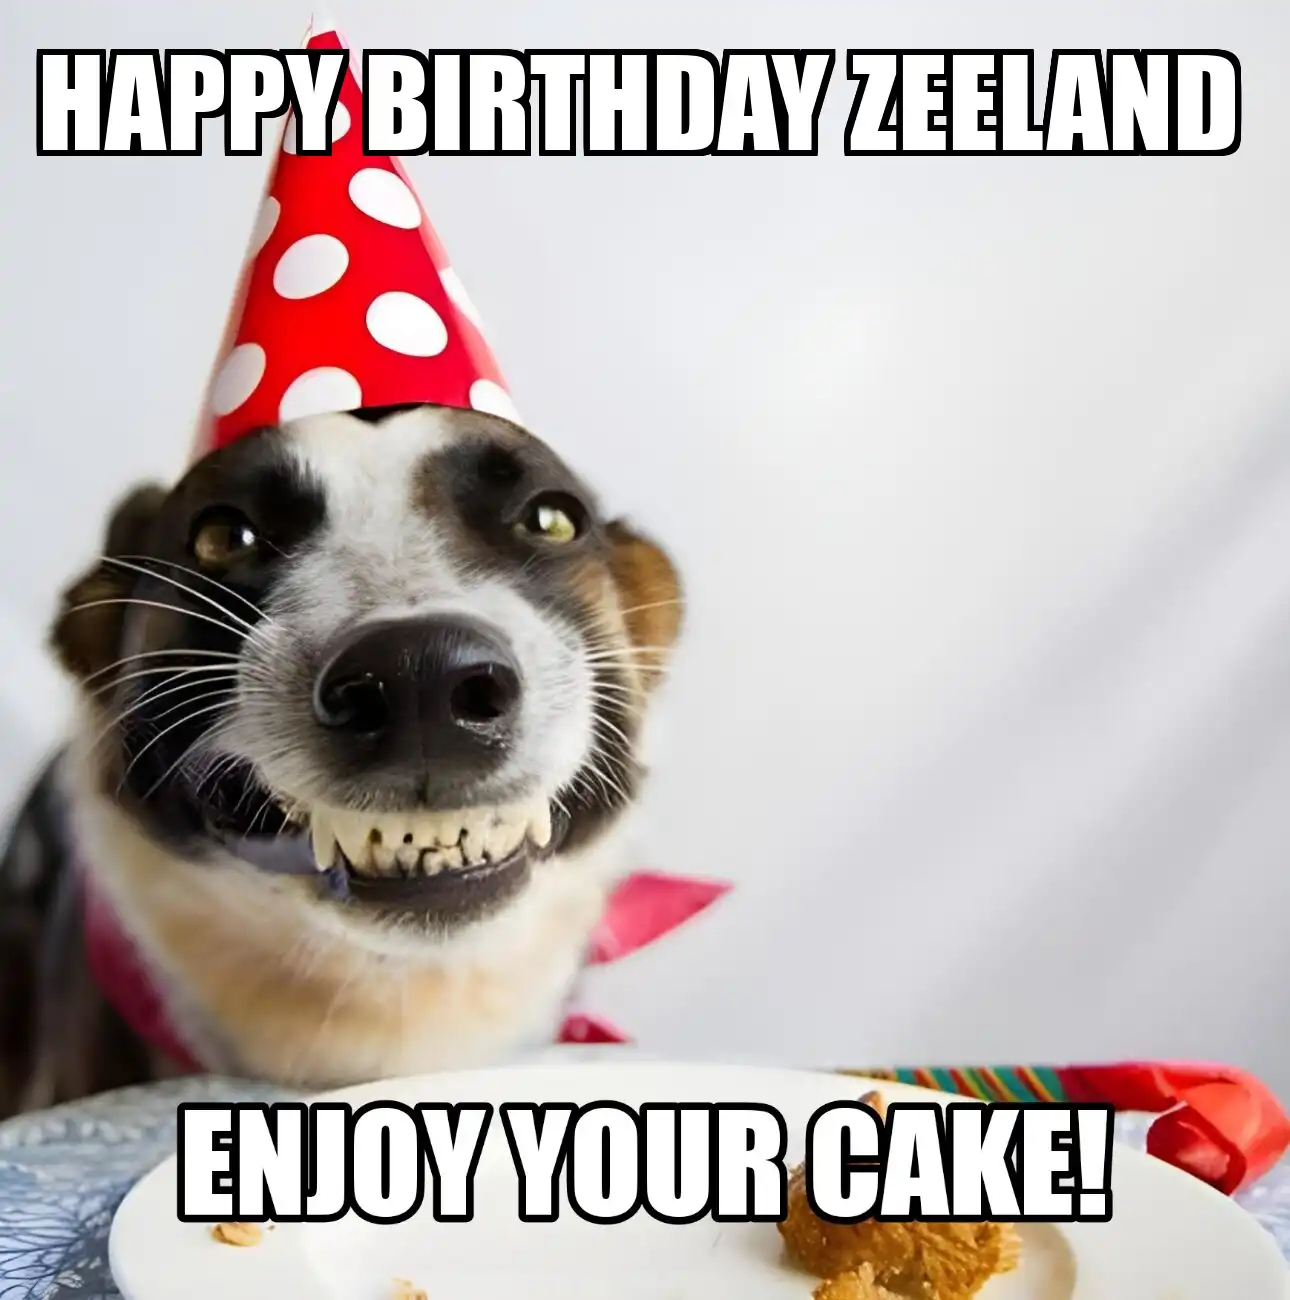 Happy Birthday Zeeland Enjoy Your Cake Dog Meme